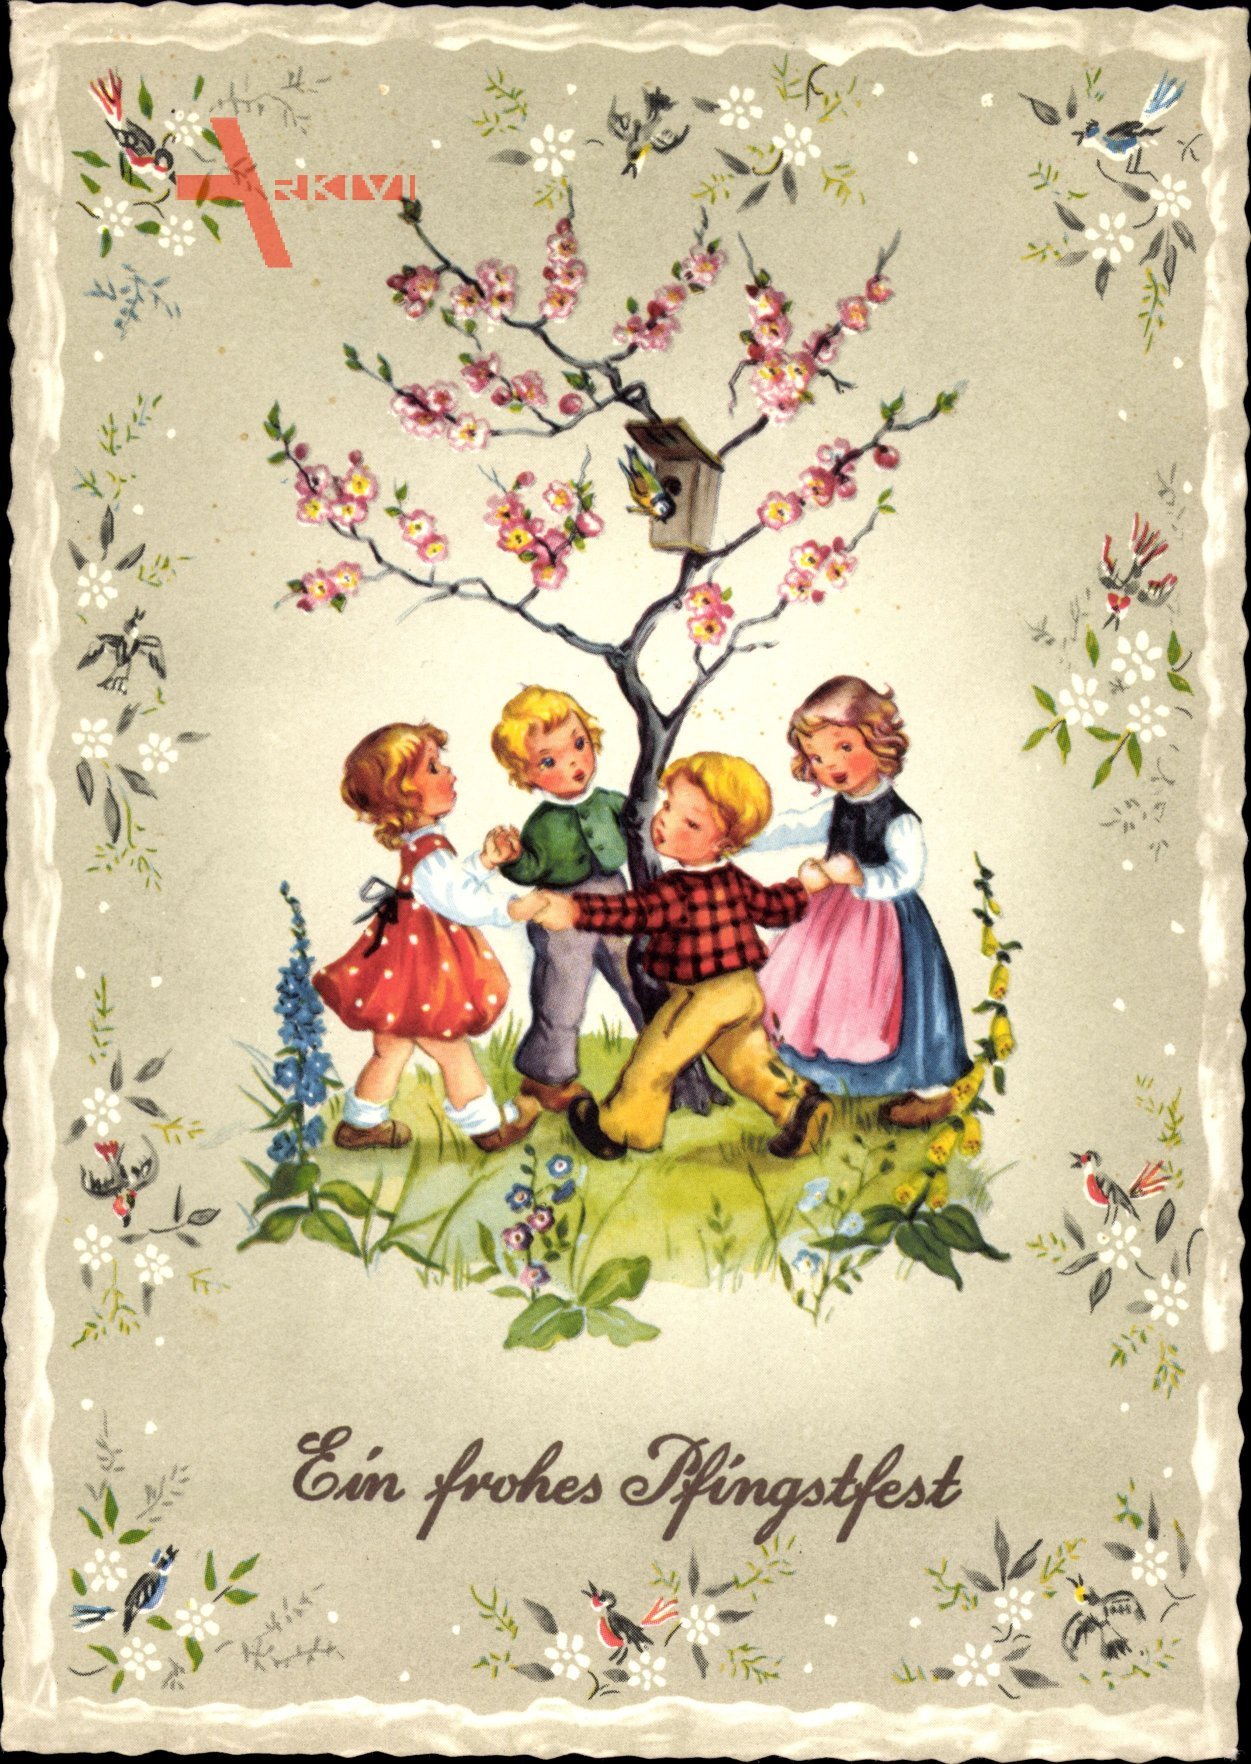 Glückwunsch Pfingsten, Kinder tanzen um einen Baum, Vogelhaus